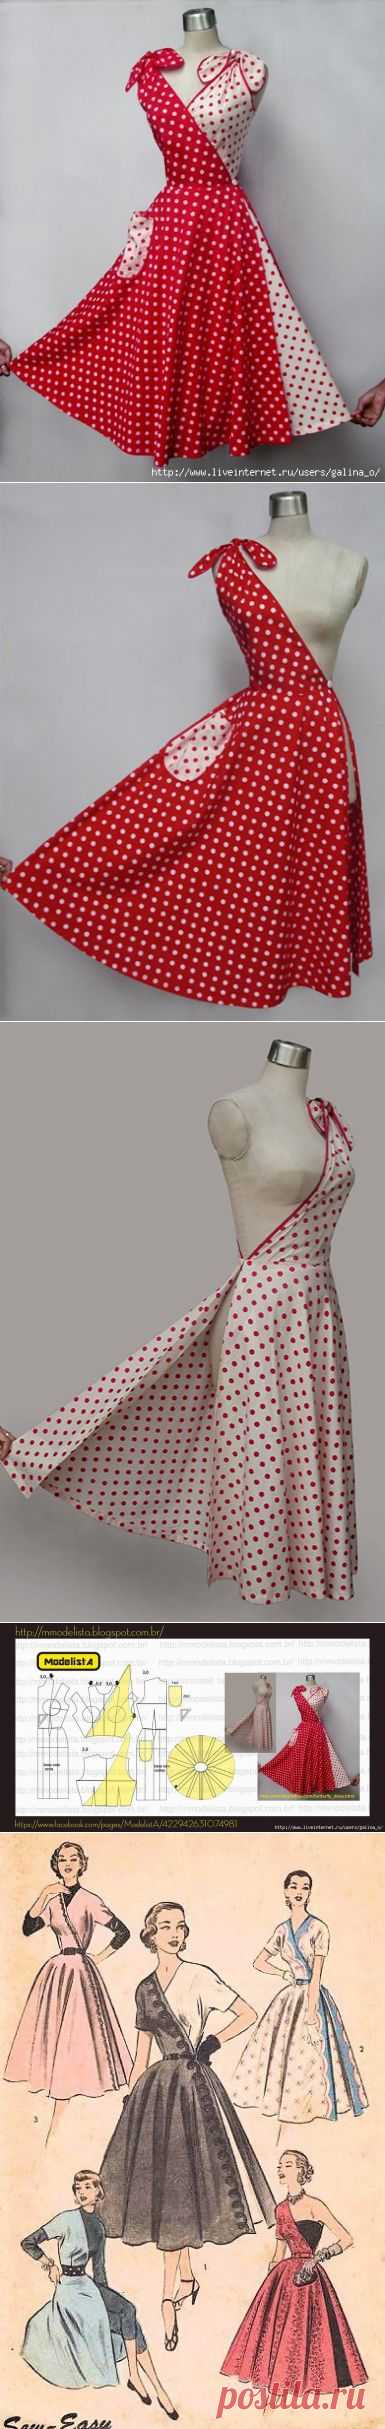 Платье-трансформер из 50-х